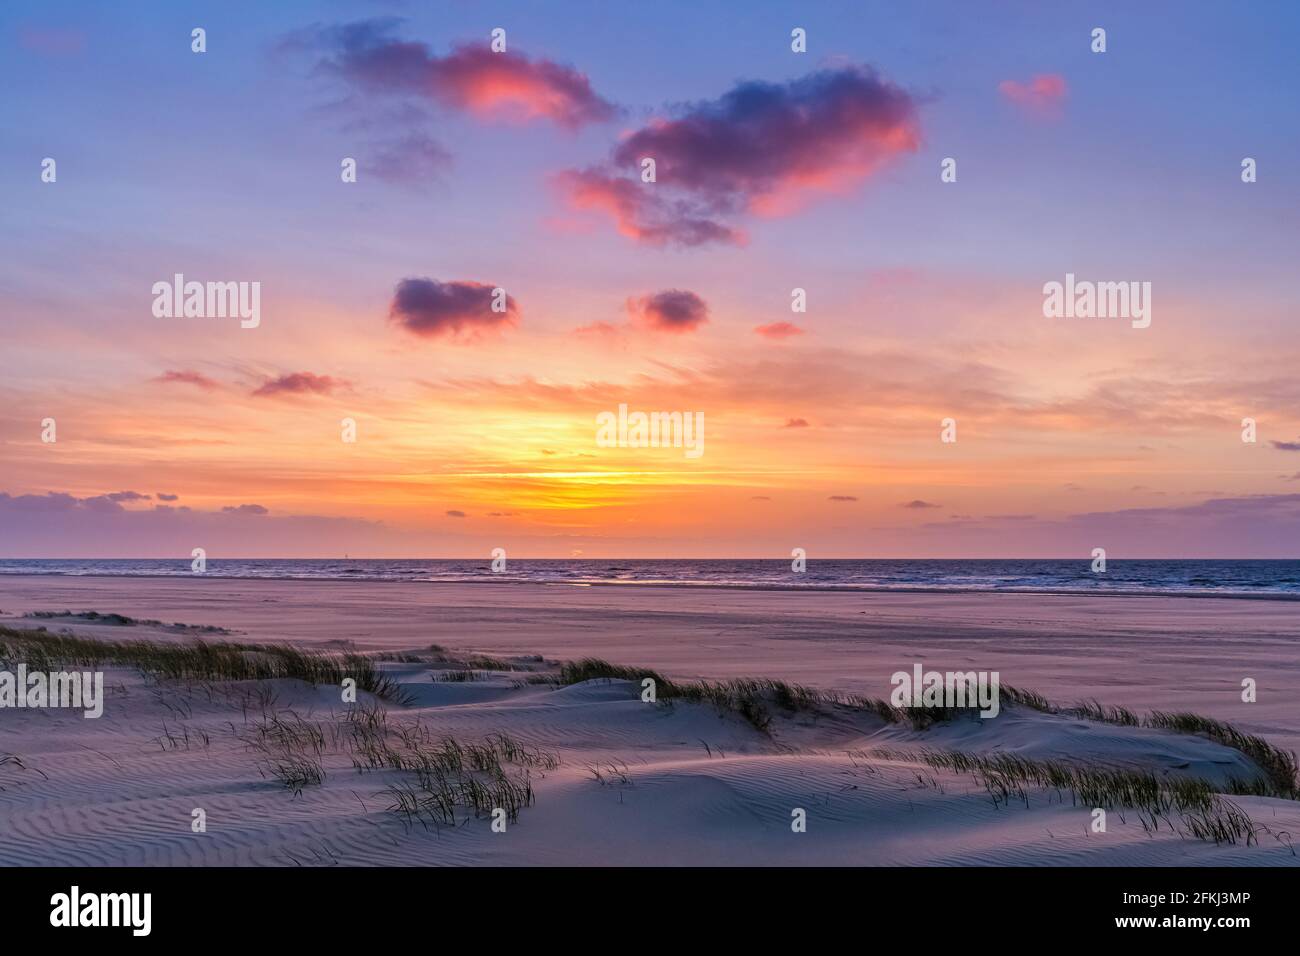 Coucher de soleil sur l'île hollandaise des Wadden Vlieland, dans la partie nord des pays-Bas. Banque D'Images